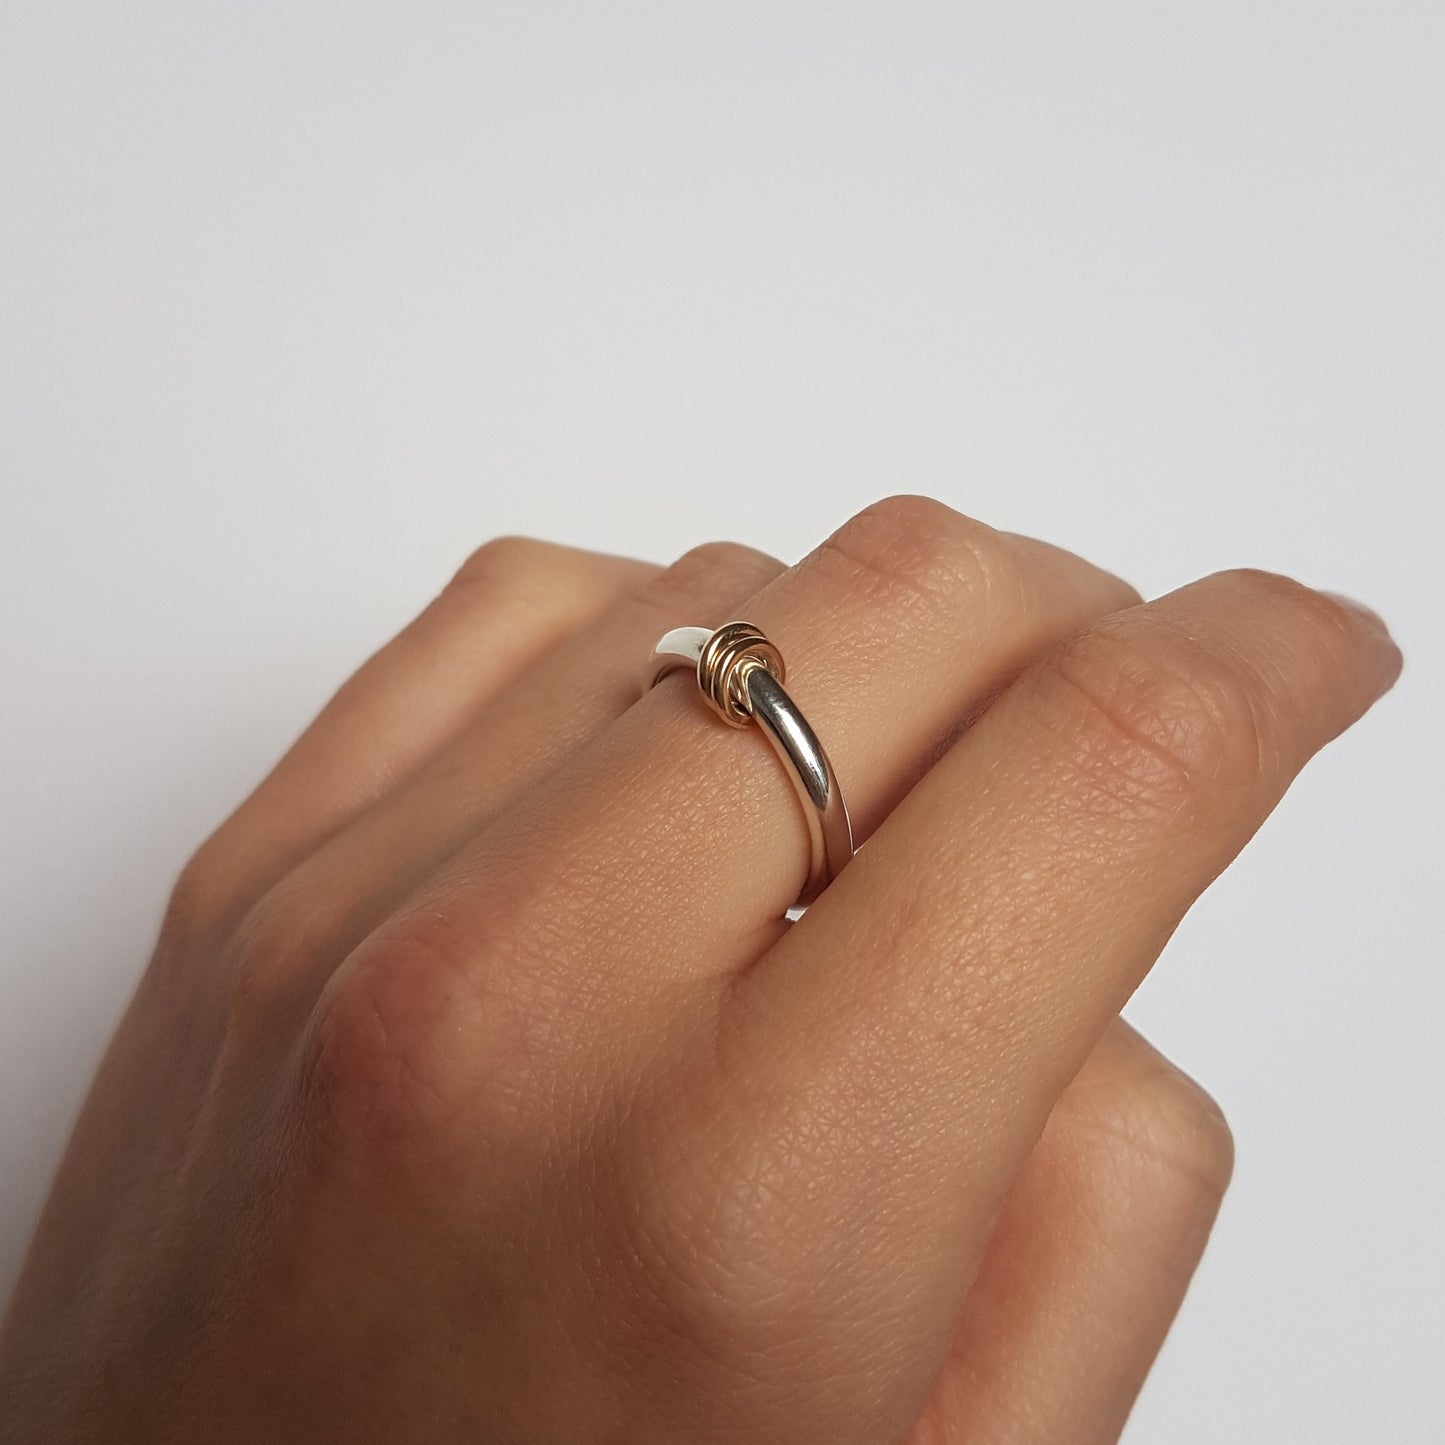 Hoop spinner ring worn on middle finger